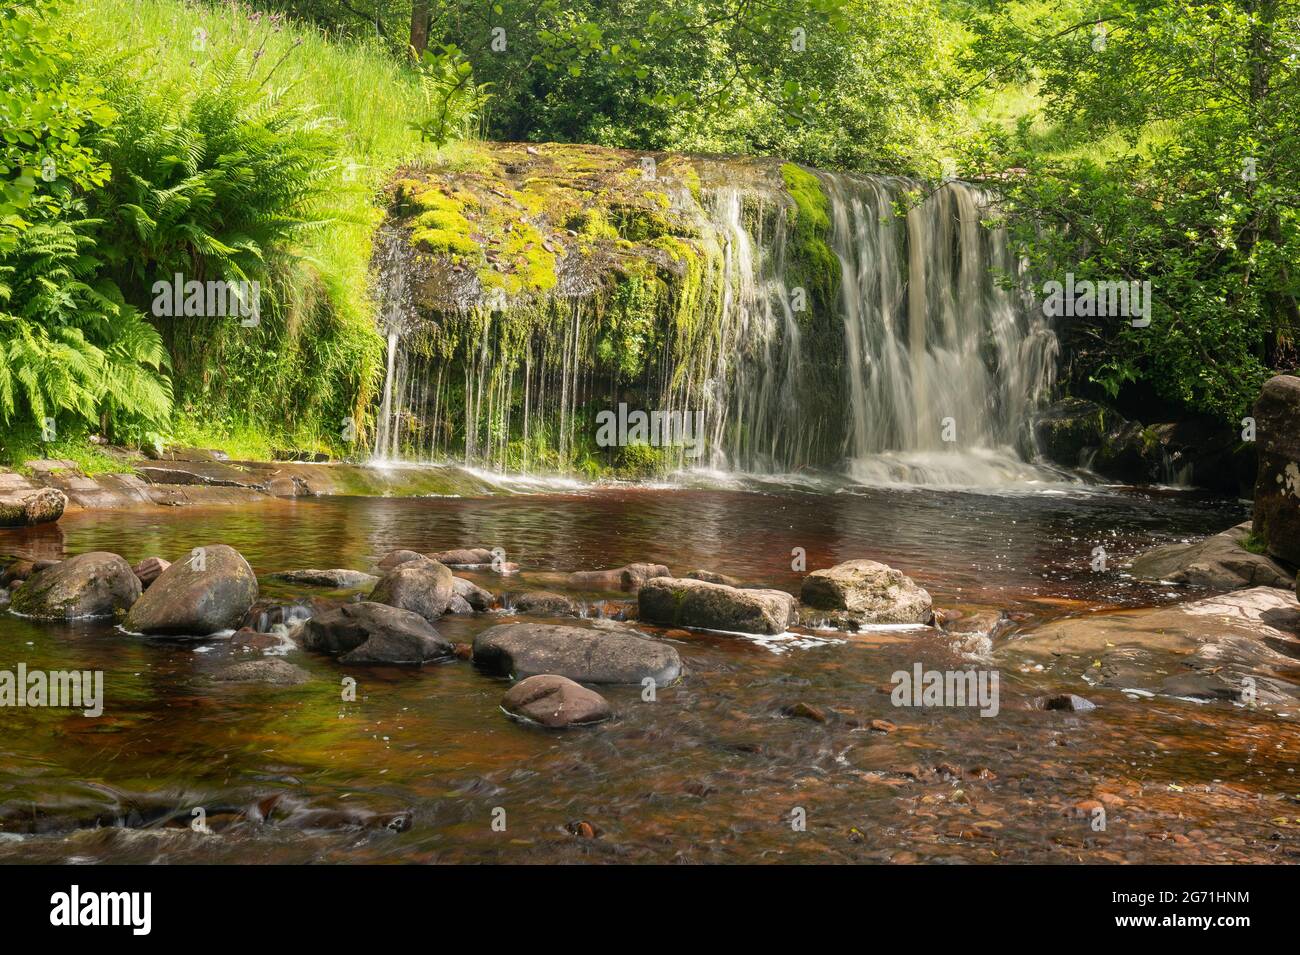 Natürliche wunderschöne Wasserfälle, die mit langer Exposition aufgenommen wurden, um das Wasser im Brecon Beacons National Park seidig glatt zu machen. Stockfoto